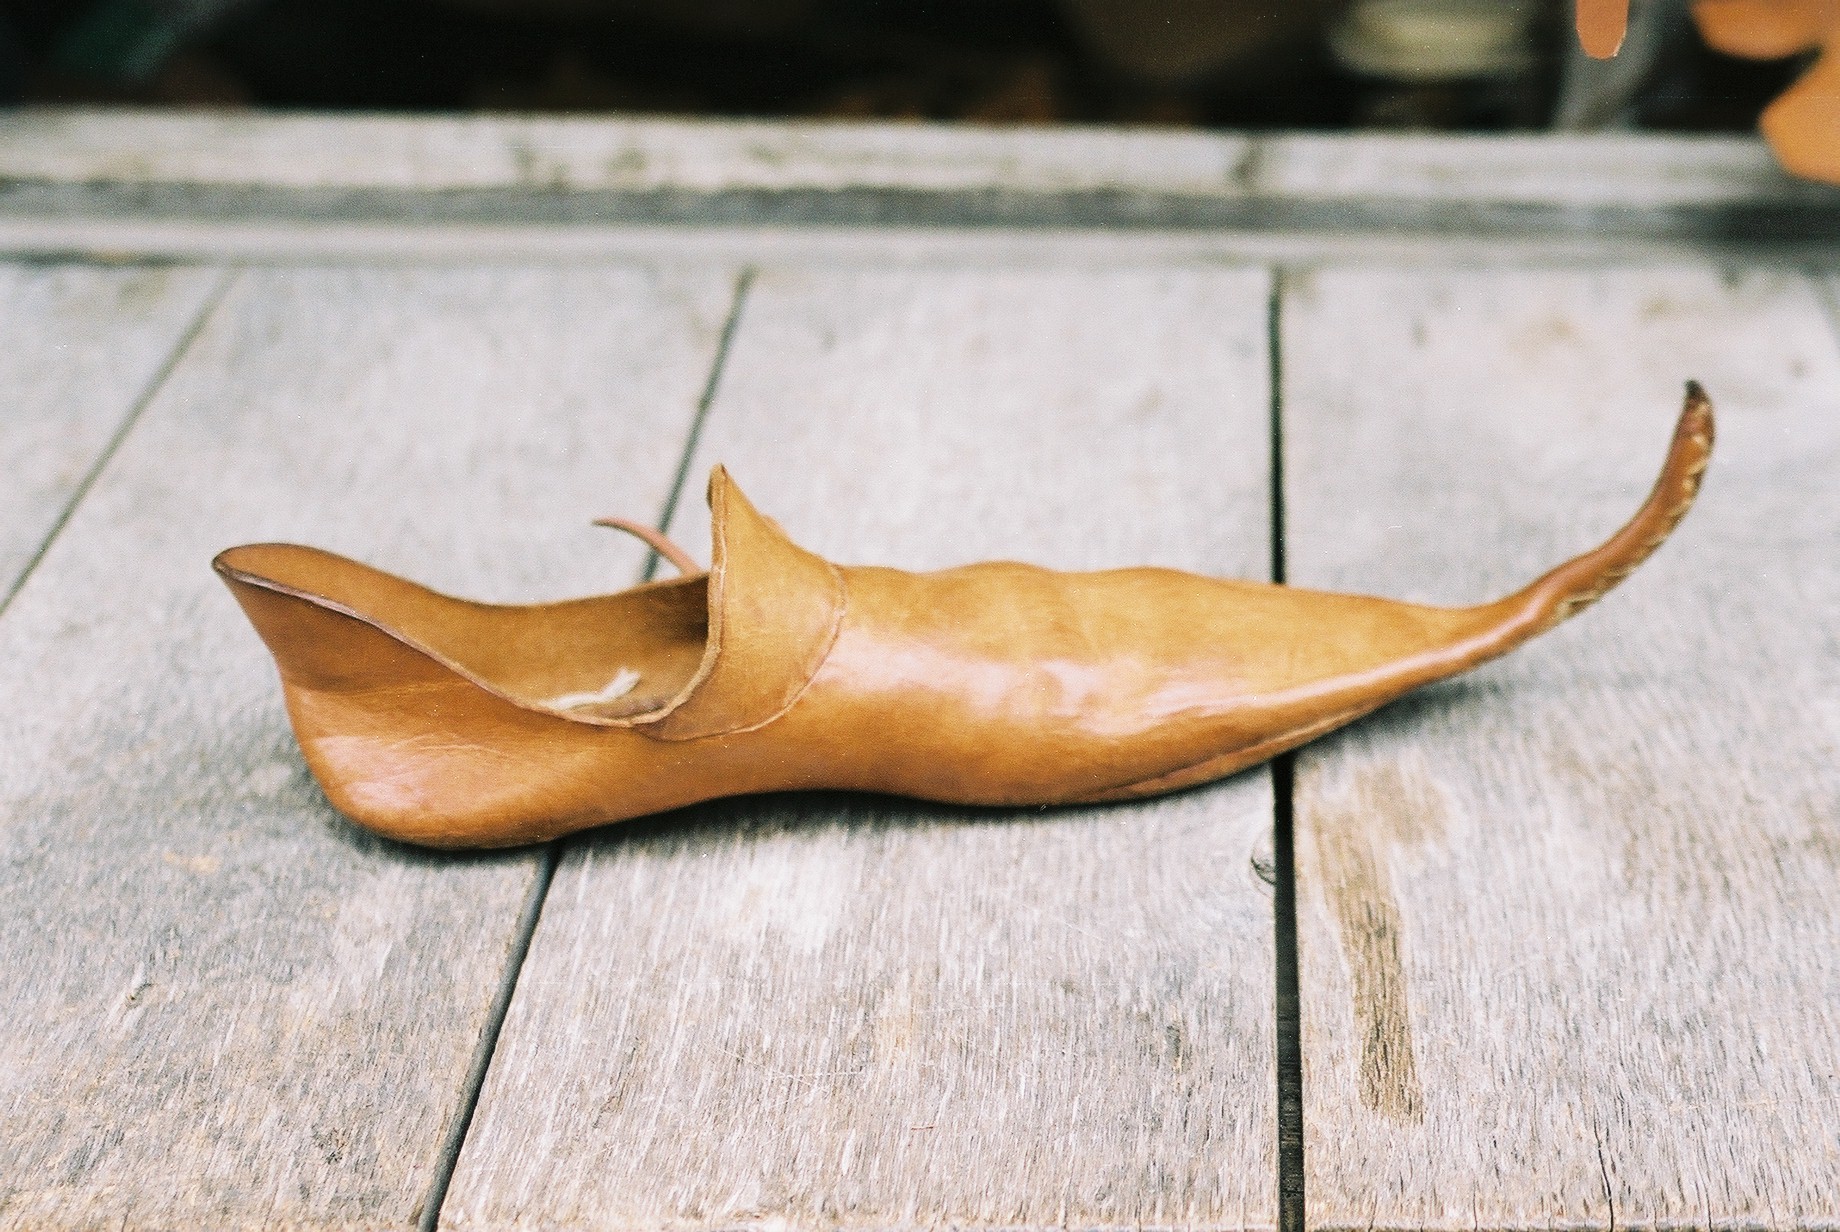 Мода на остроконечные туфли спровоцировала массовые заболевания суставов в Средние века